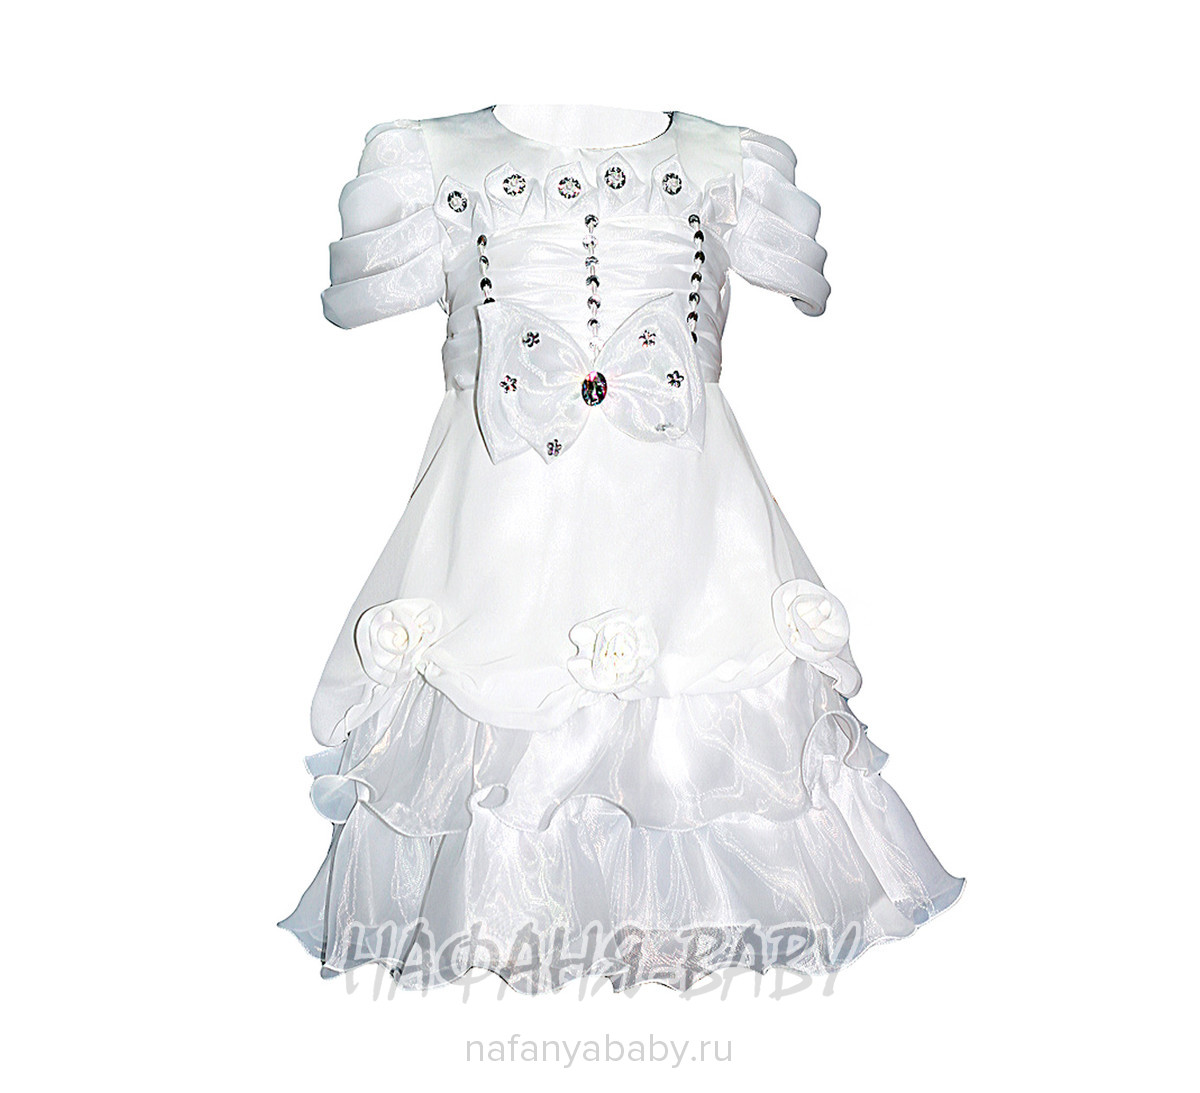 Детское нарядное платье  арт: 5208, 1-4 года, 5-9 лет, цвет белый, оптом Китай (Пекин)